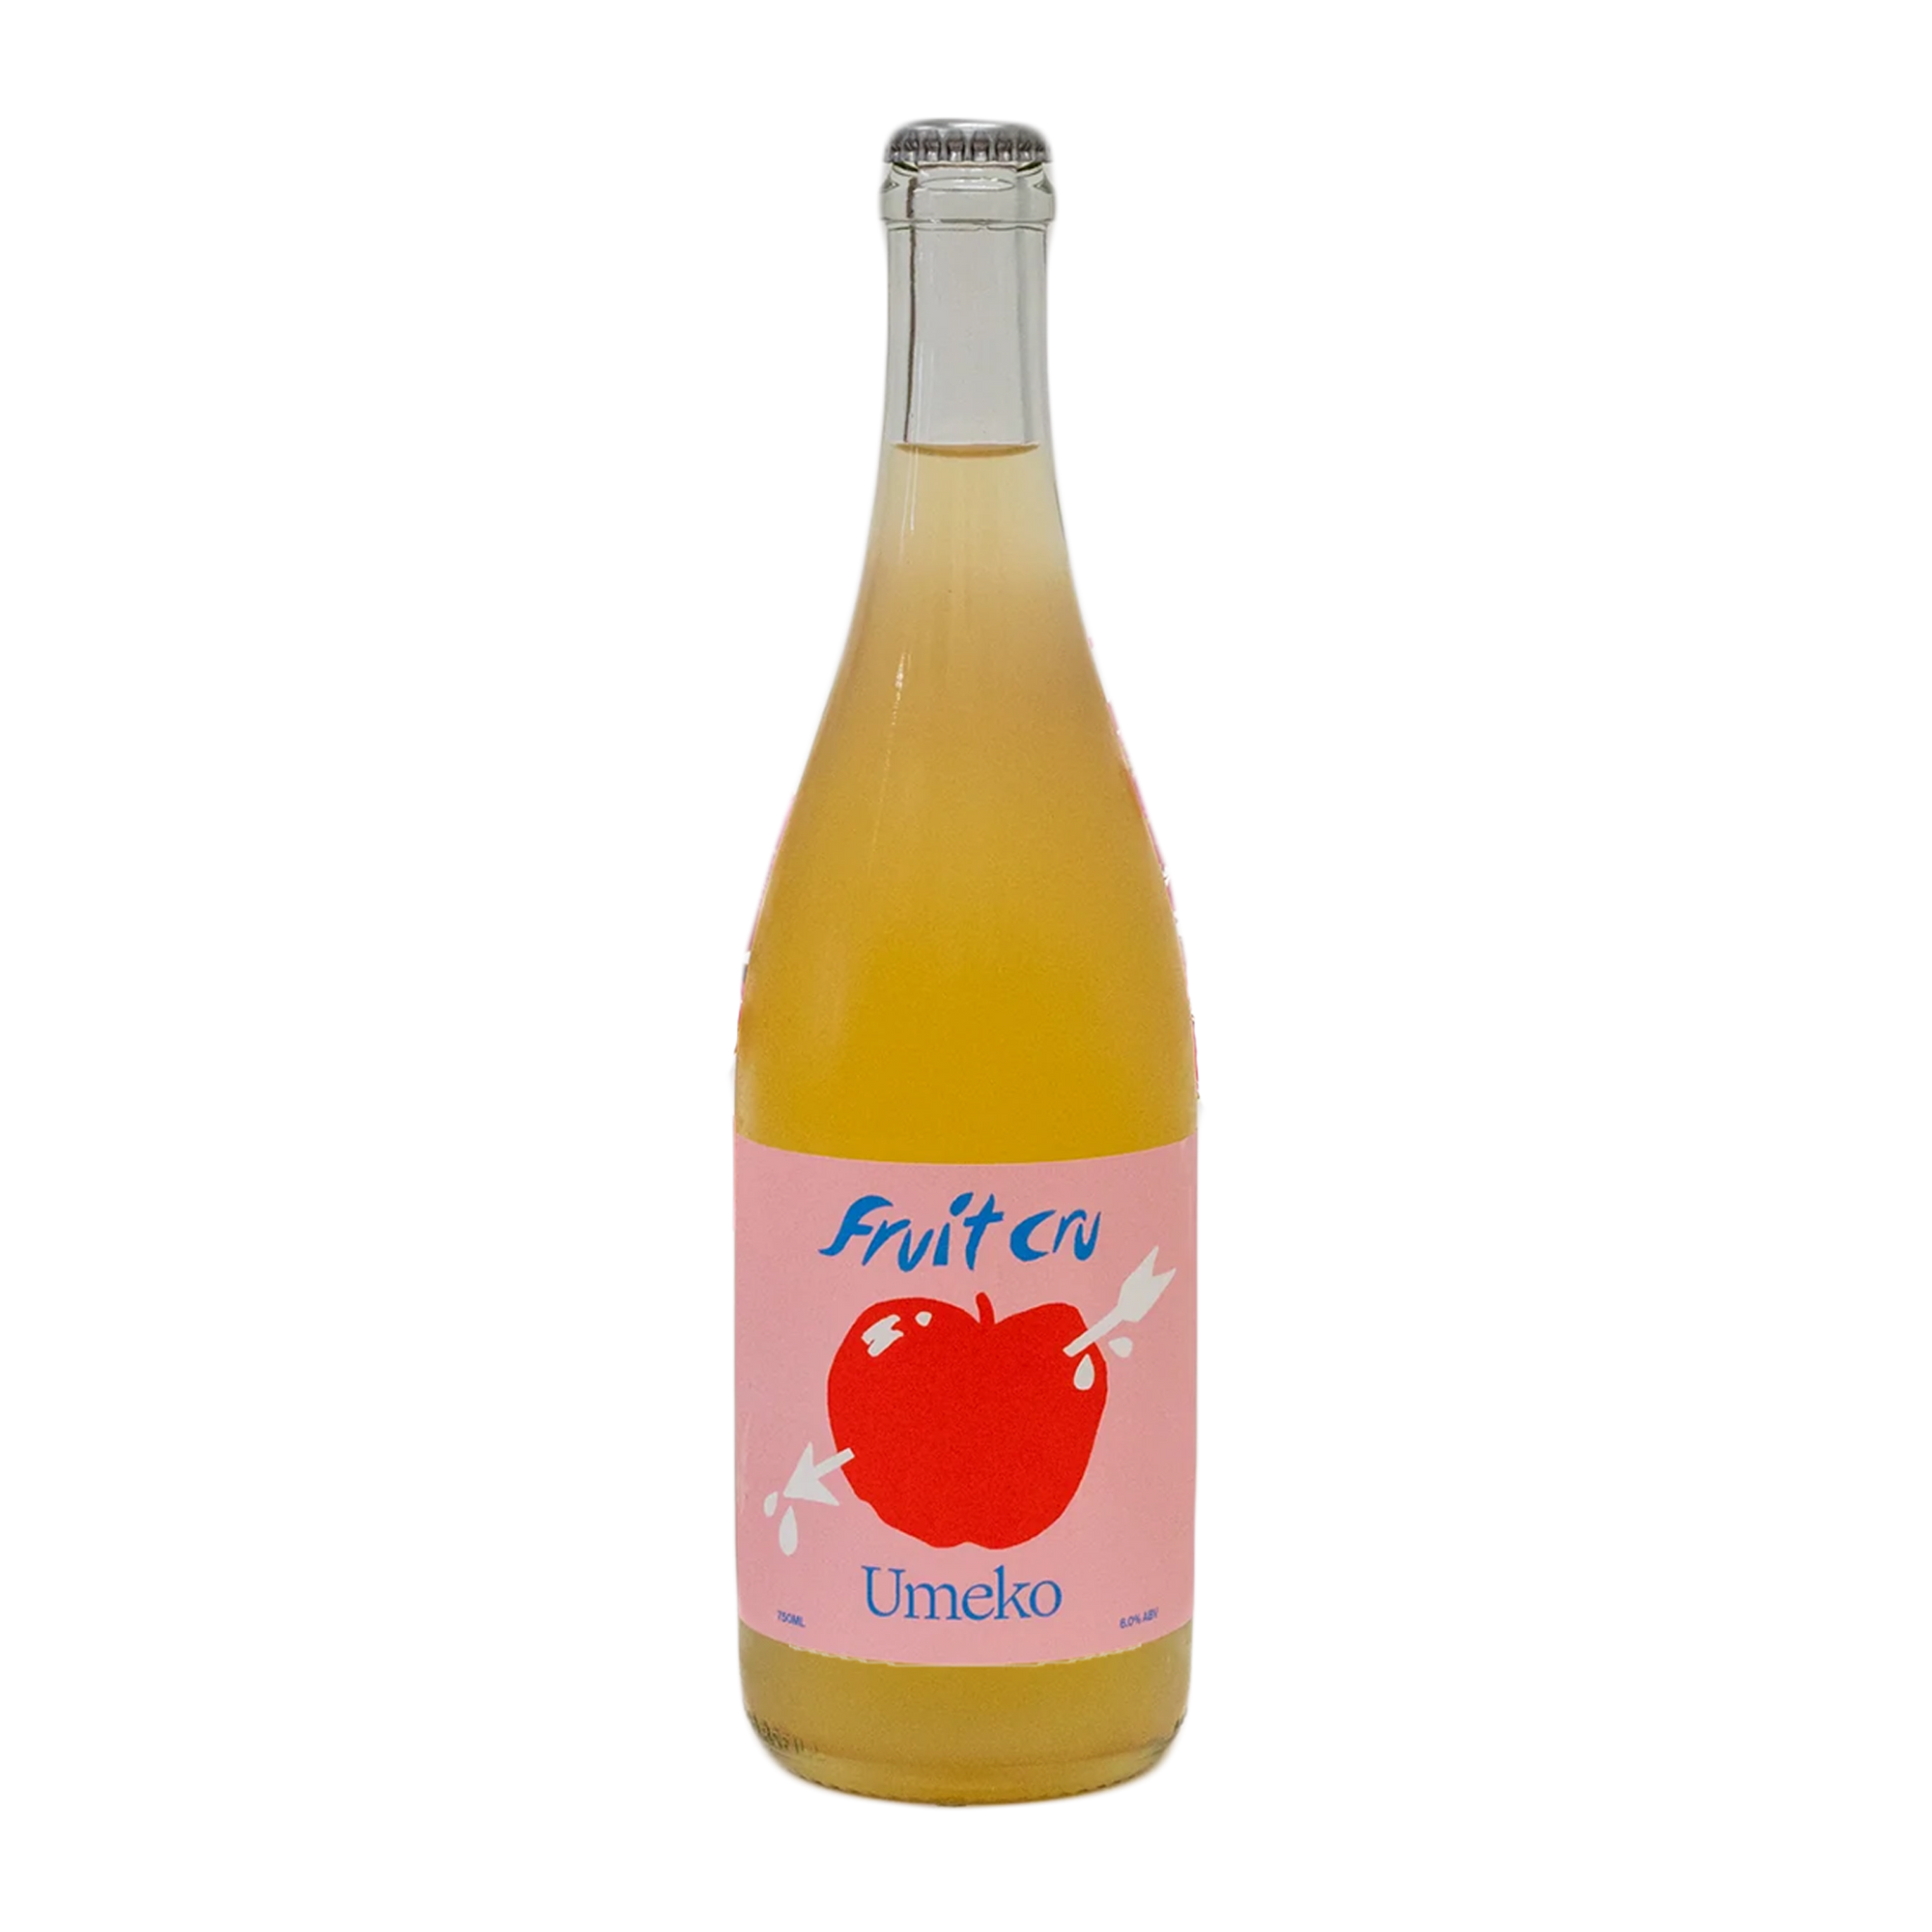 Fruit Cru 'Umeko' Pét Nat Cider 2023